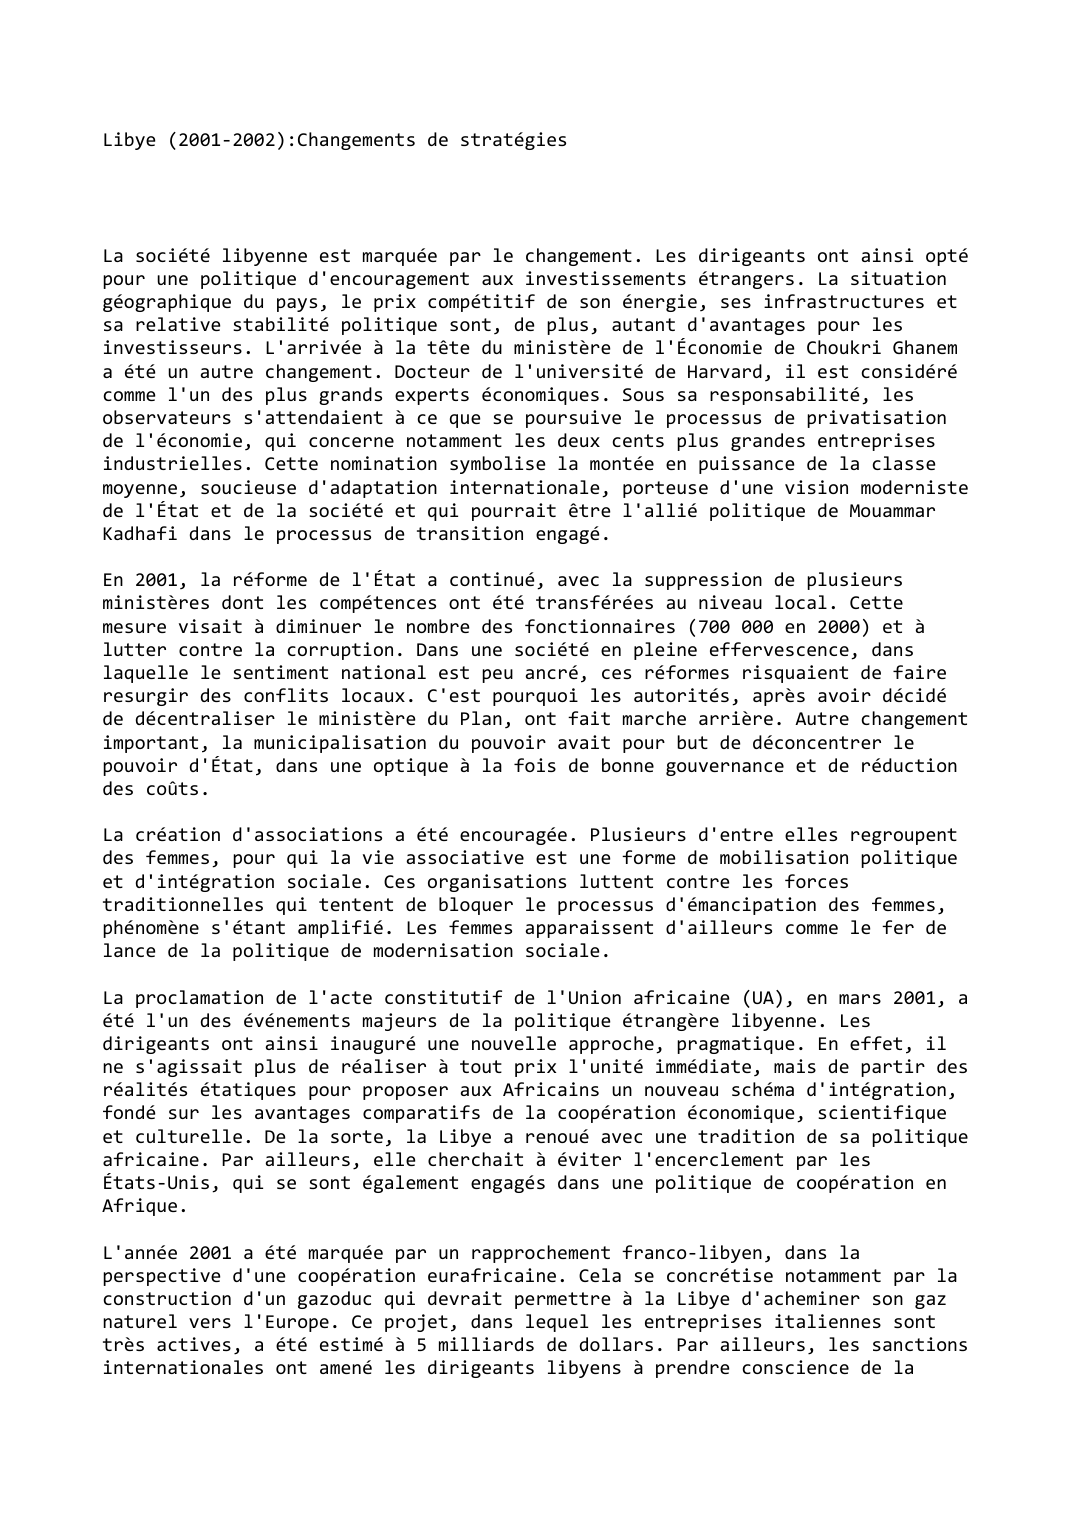 Prévisualisation du document Libye (2001-2002):Changements de stratégies